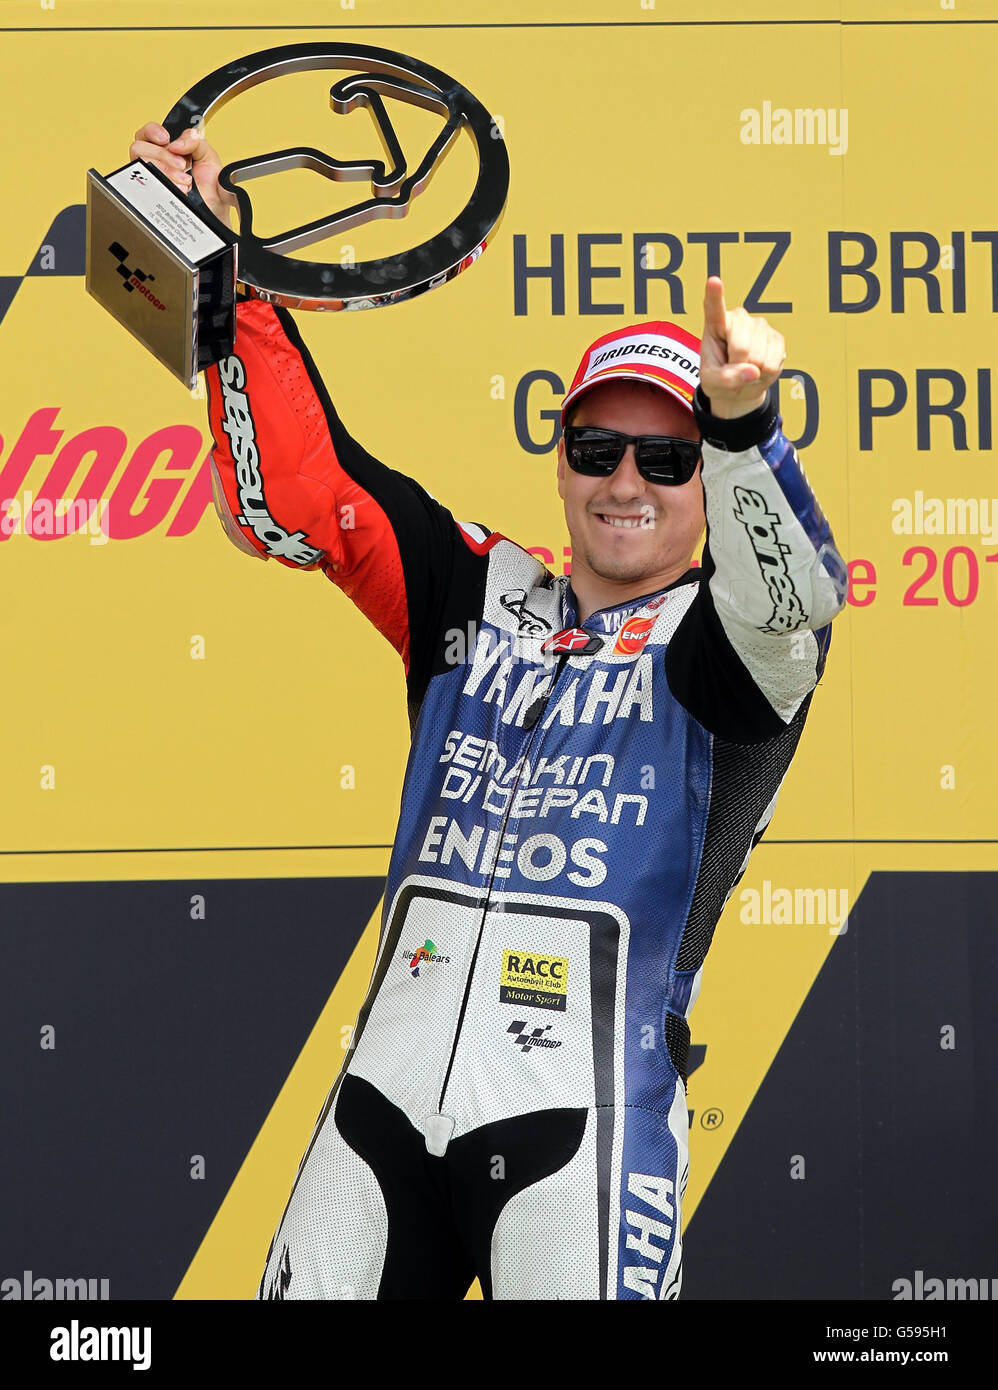 Jorge Lorenzo in Spagna celebra la sua vittoria durante il round britannico del Moto GP al circuito di Silverstone, nel Northamptonshire. Foto Stock